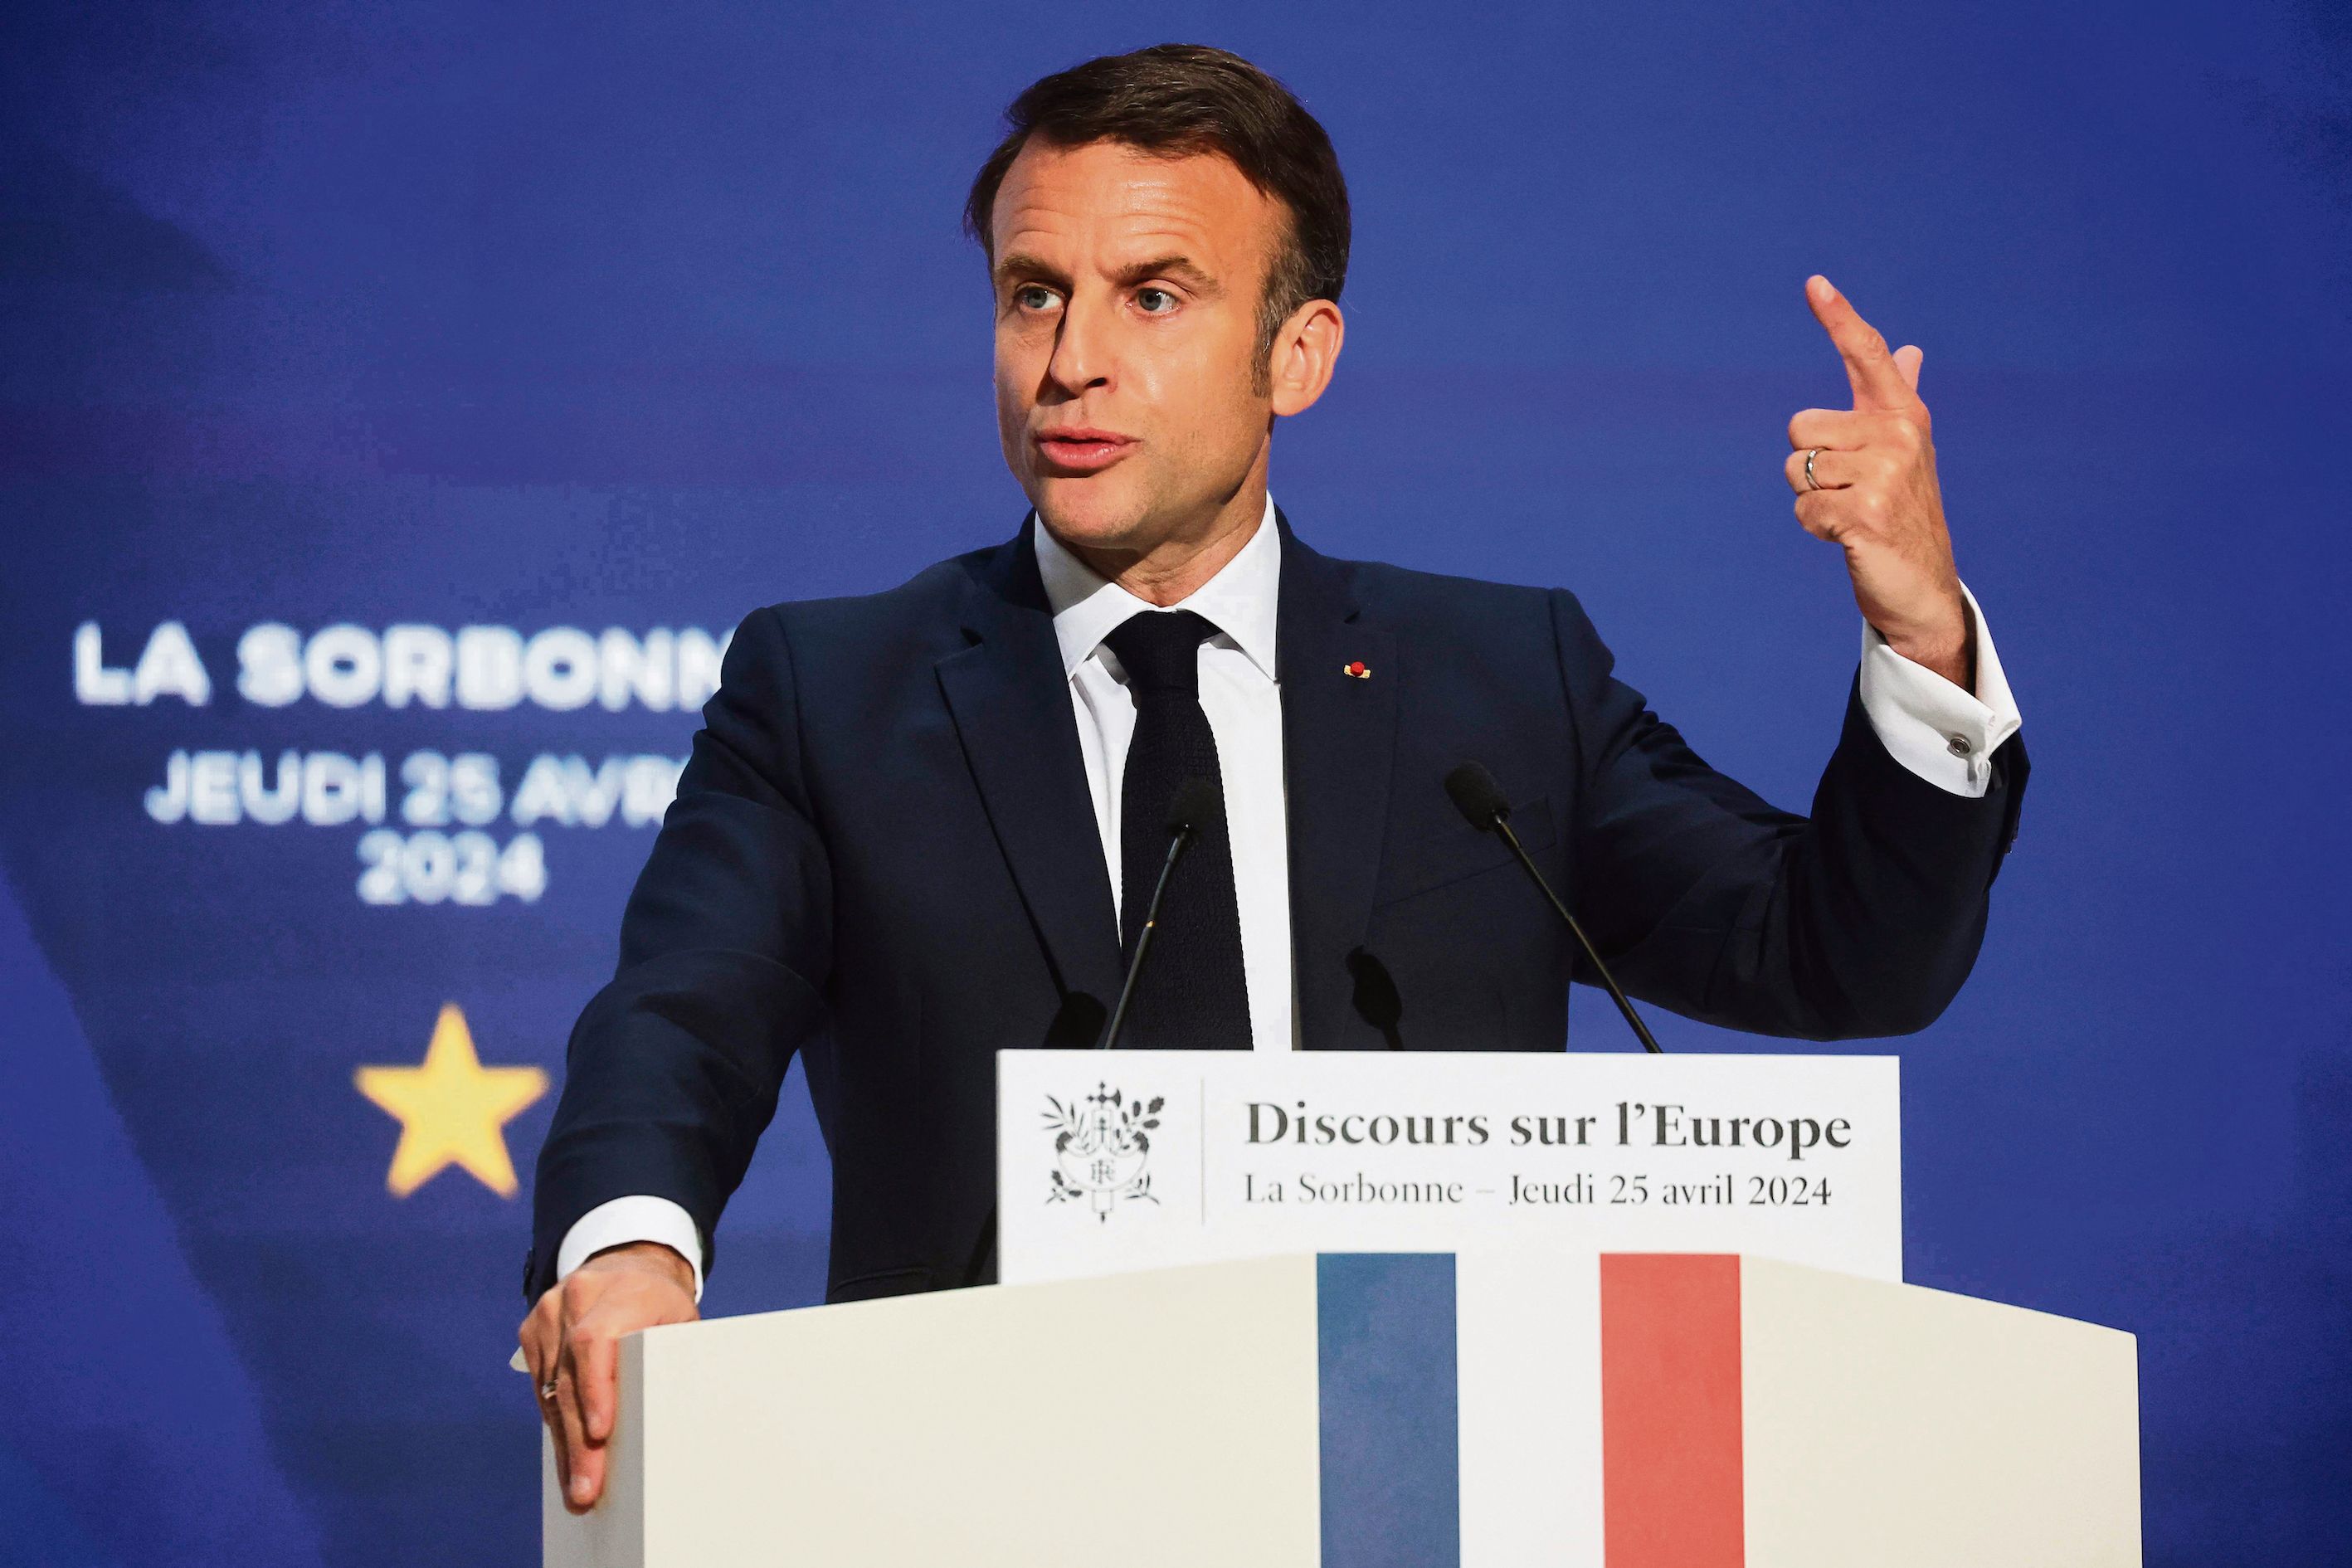 , Discours d&rsquo;Emmanuel Macron sur l&rsquo;Europe : les espoirs déçus de Sorbonne 2